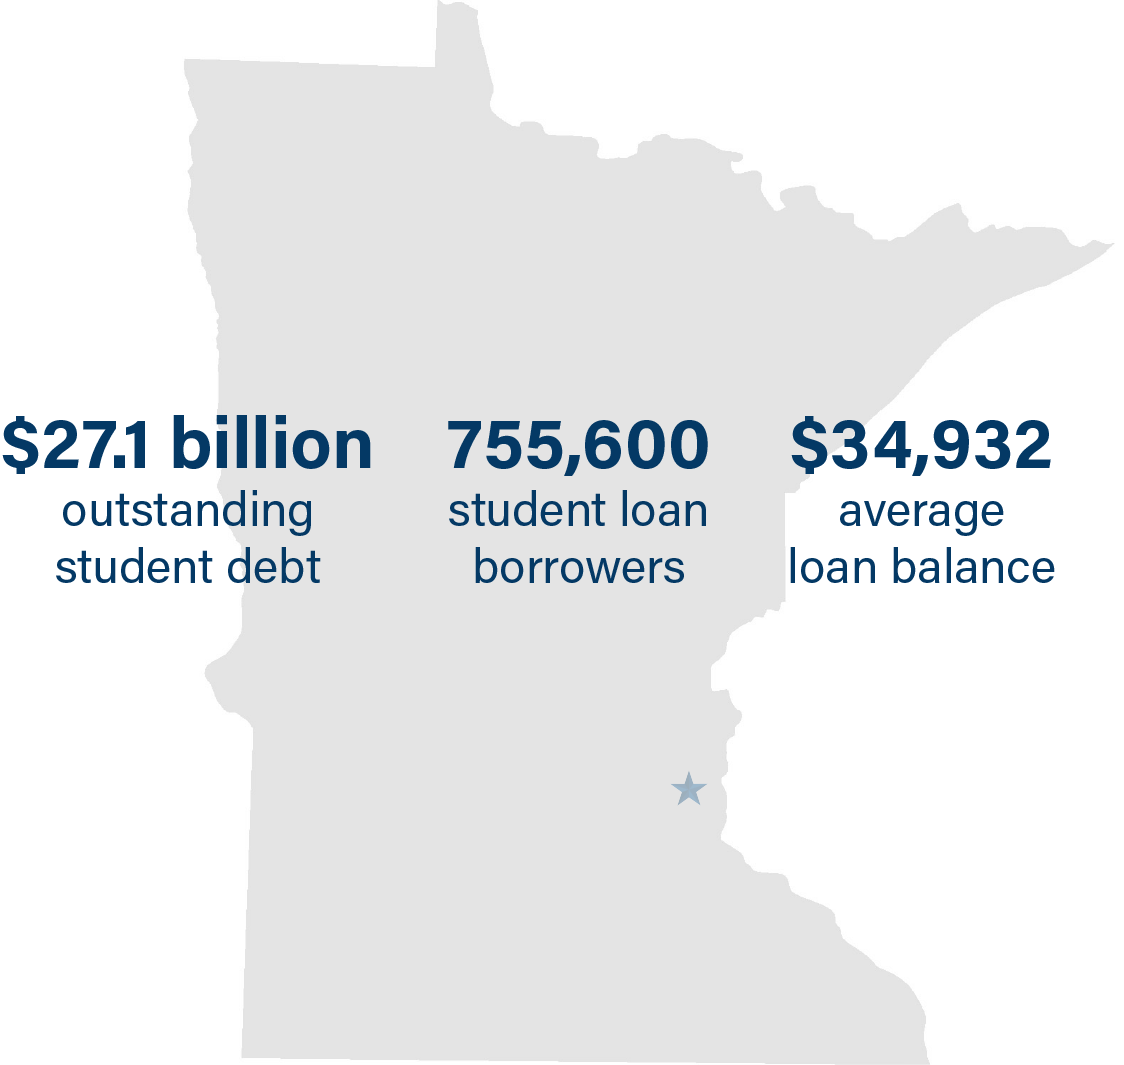 Minnesota student debt:

$27.1 billion in outstanding debt 
755,600 student loan borrowers
$34,932 in average loan balances